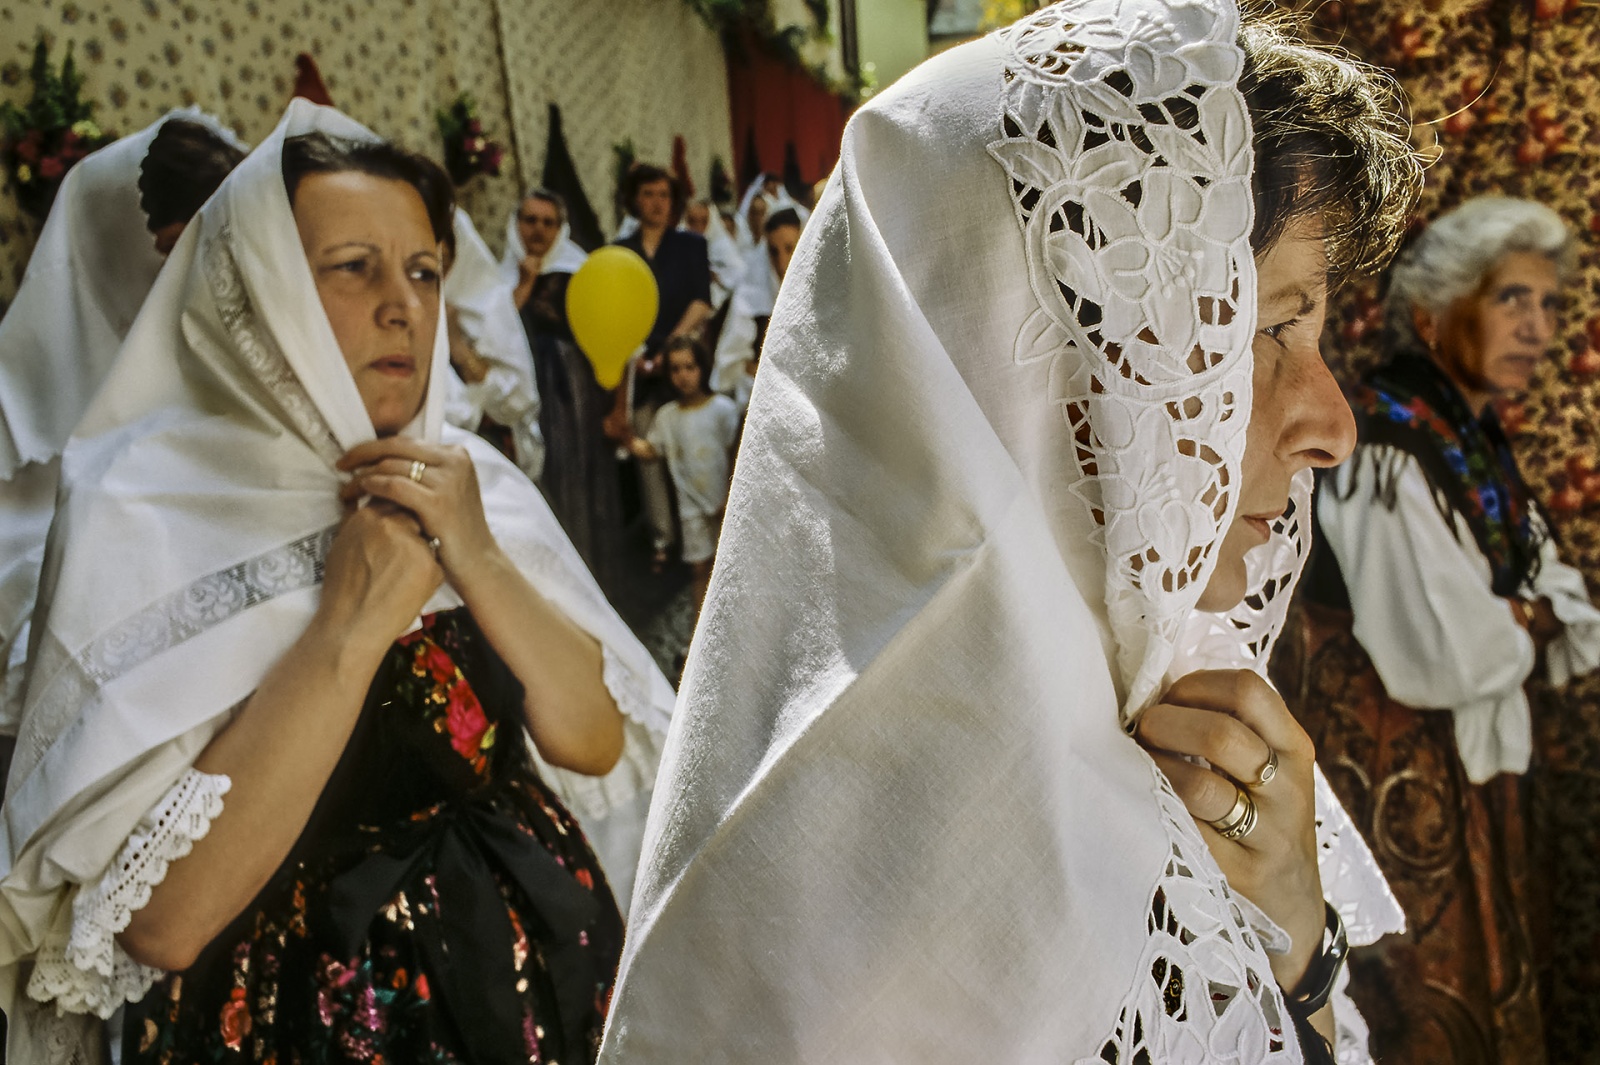 Corpus Domini Festival in Premana, Italy 1996 - analogic photo